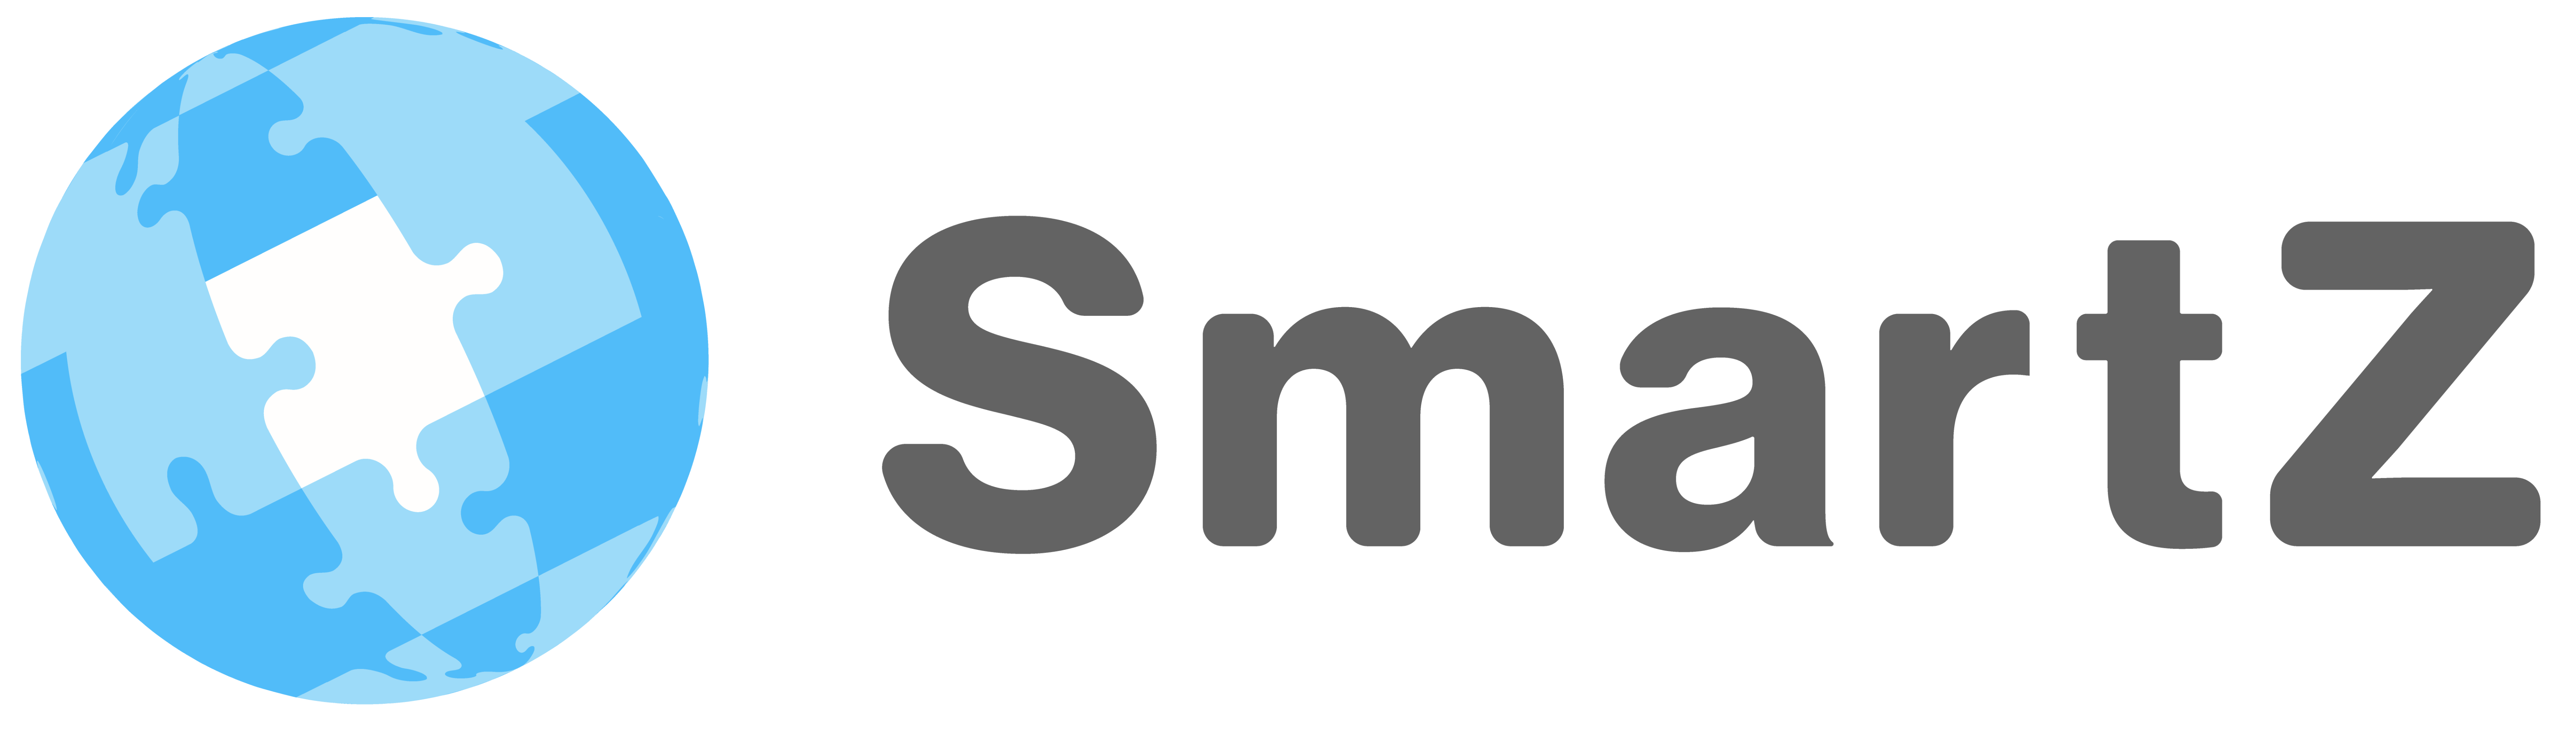 株式会社SmartZ,スマルツ